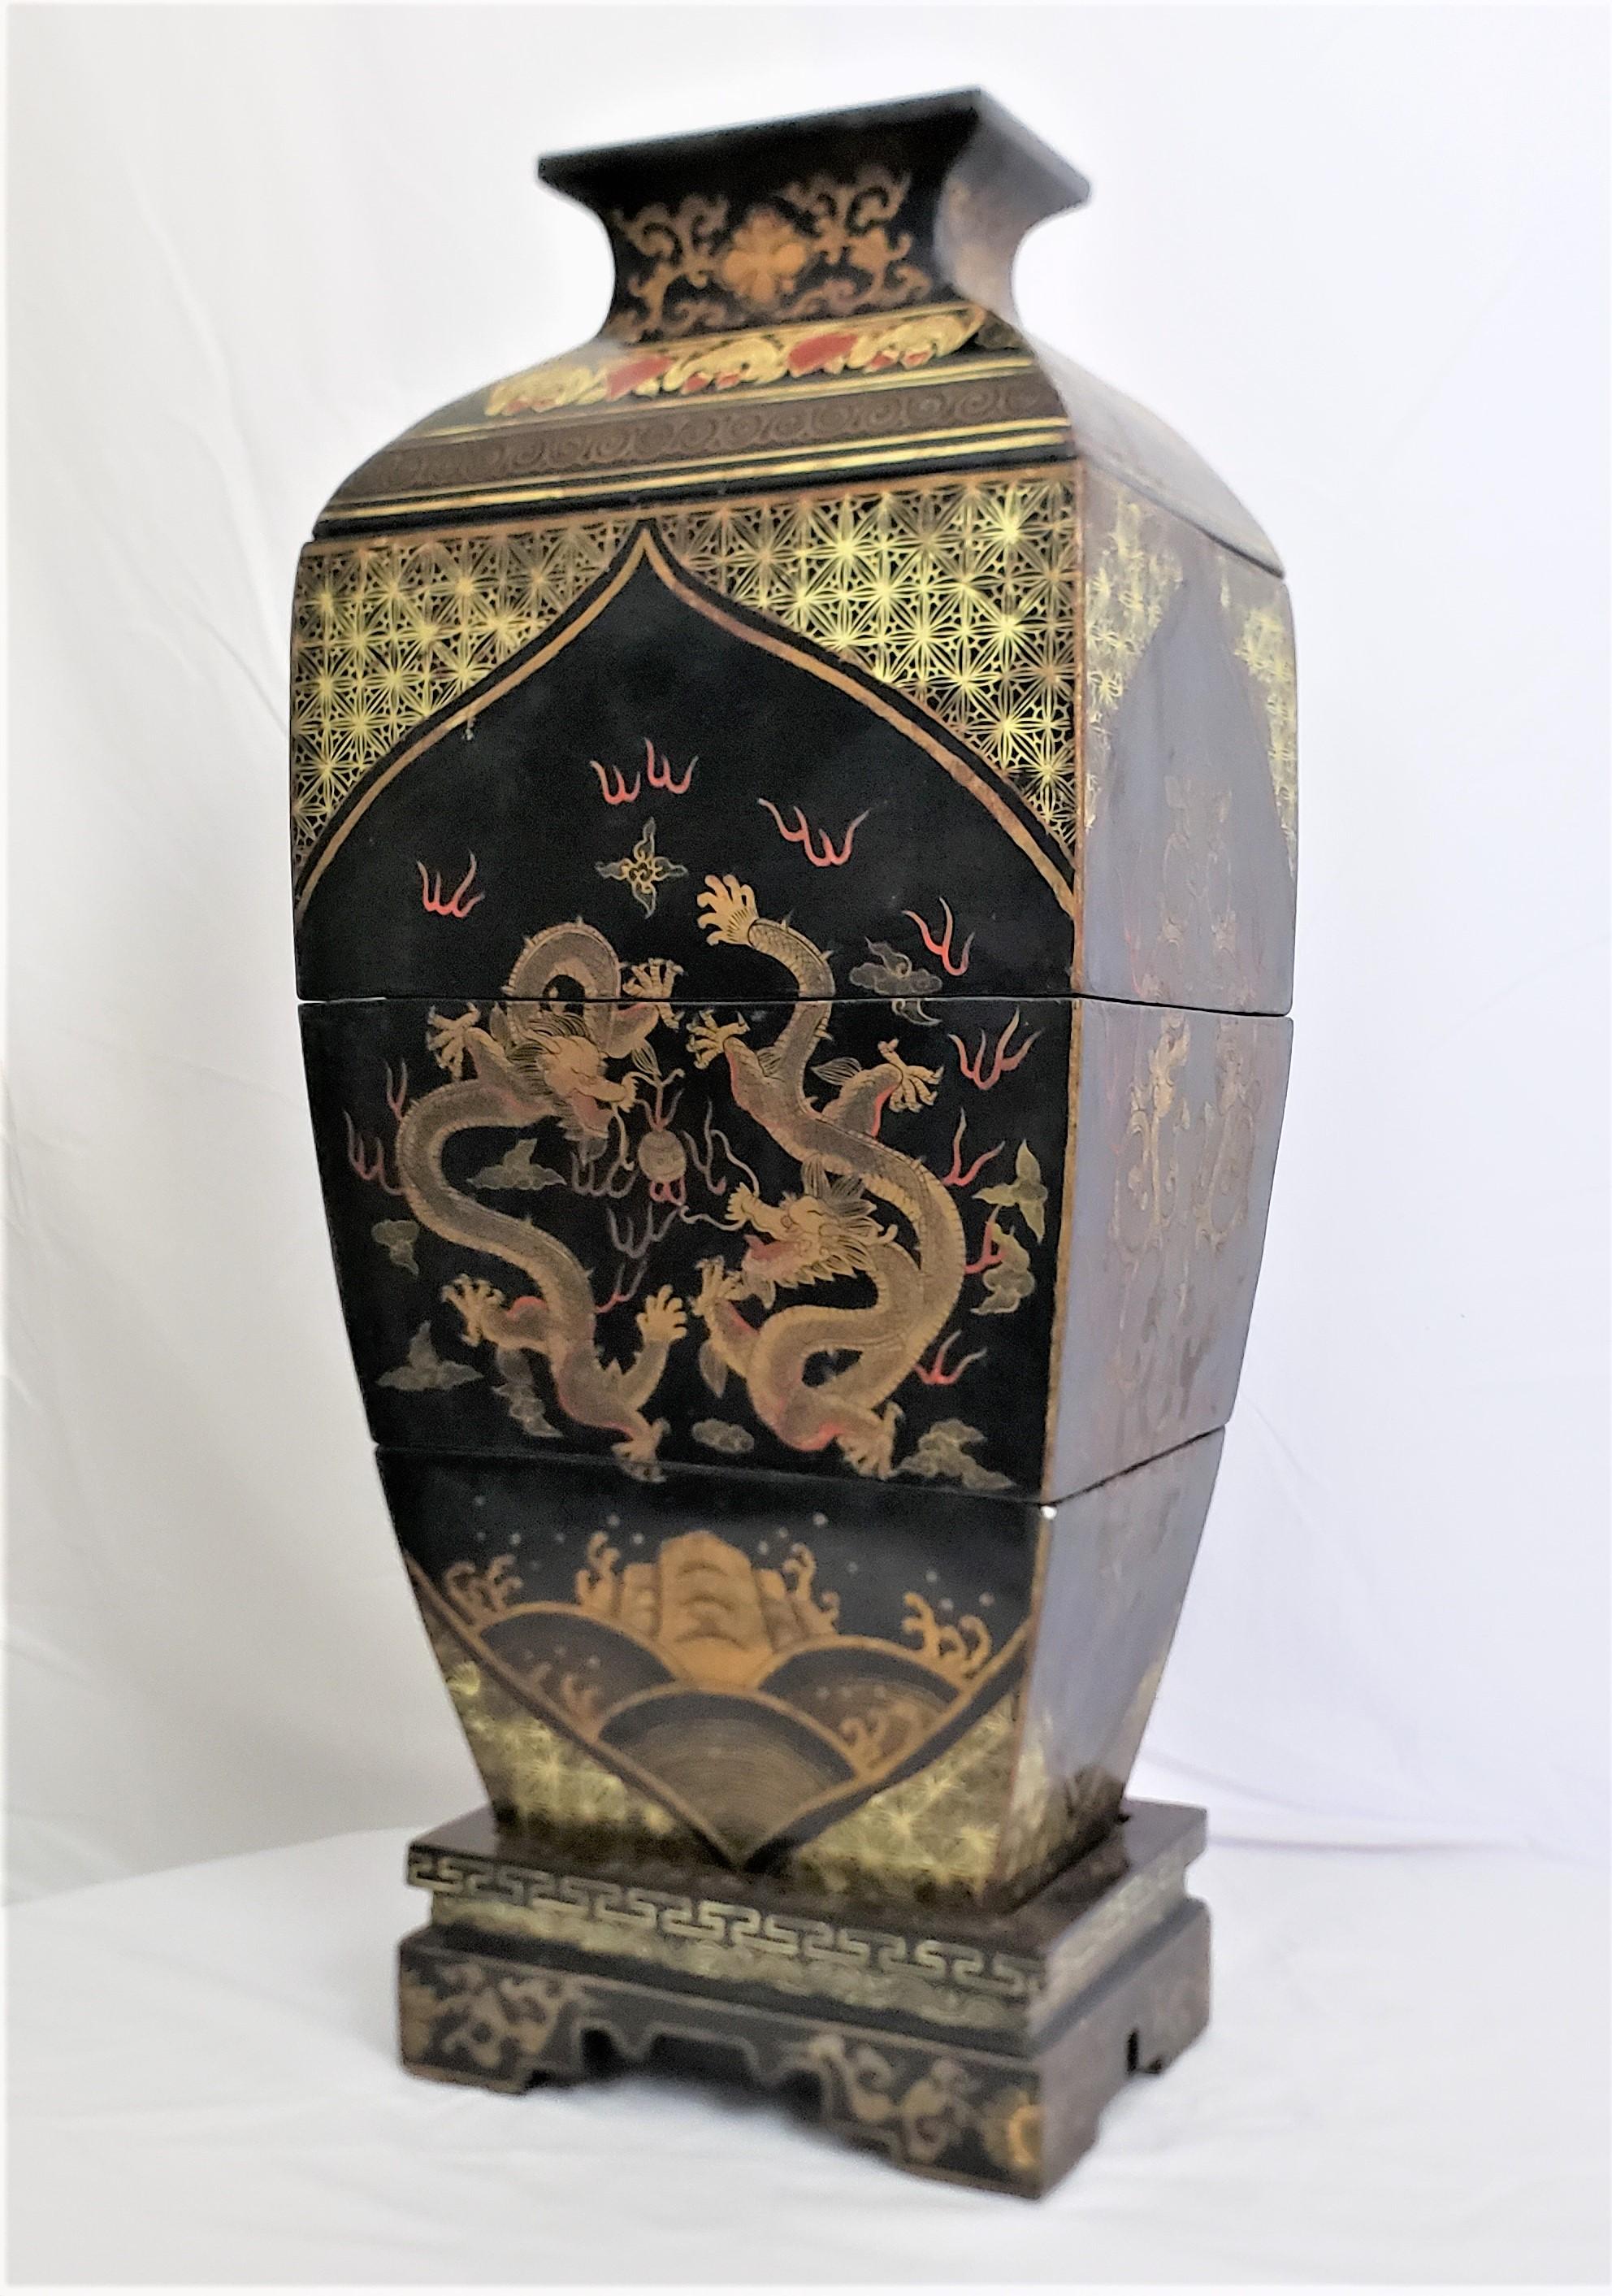 Dieses antike, lackierte Stapelbox-Set ist unsigniert, stammt aber vermutlich aus China aus der Zeit der frühen Republik um 1920 und ist im chinesischen Exportstil gehalten. Das Set besteht aus einem Sockel und einem Deckel sowie drei ineinander